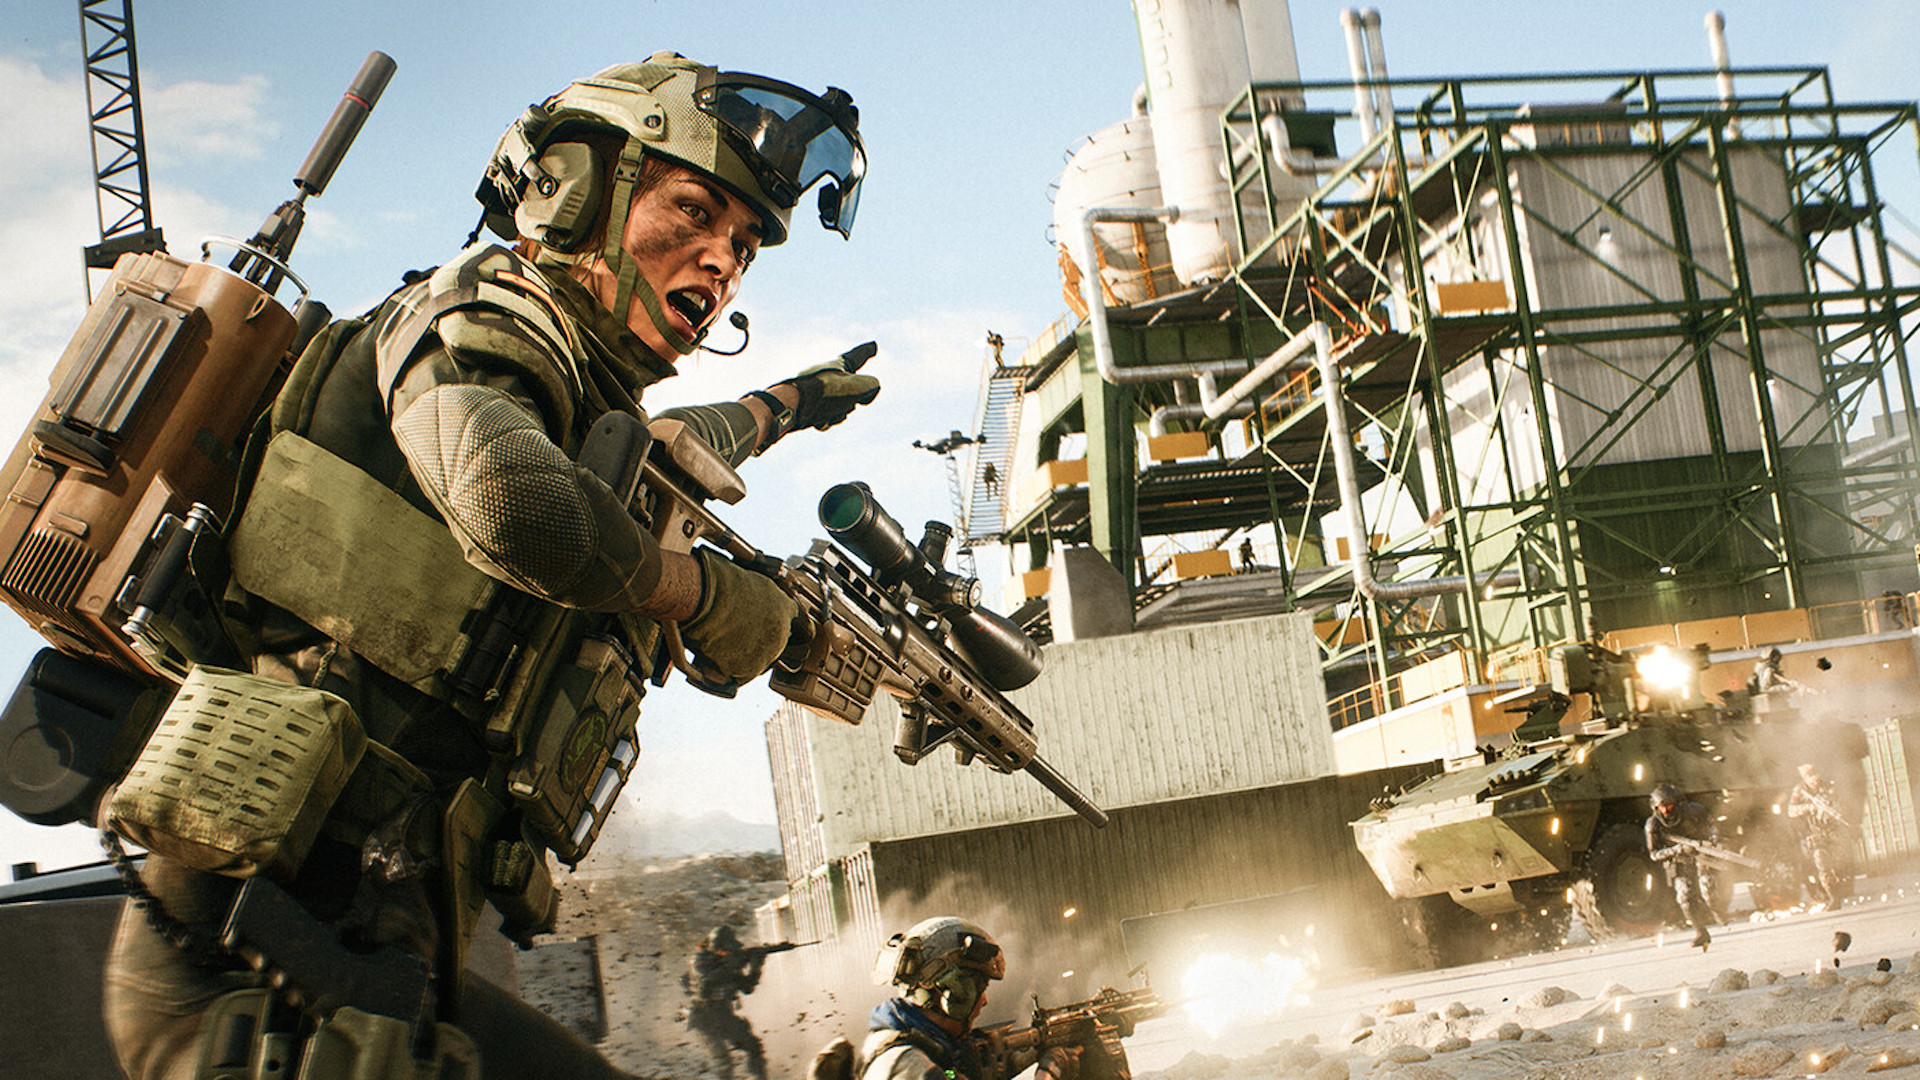 Le PDG d’EA promet un prochain Battlefield exceptionnel grâce aux leçons apprises.